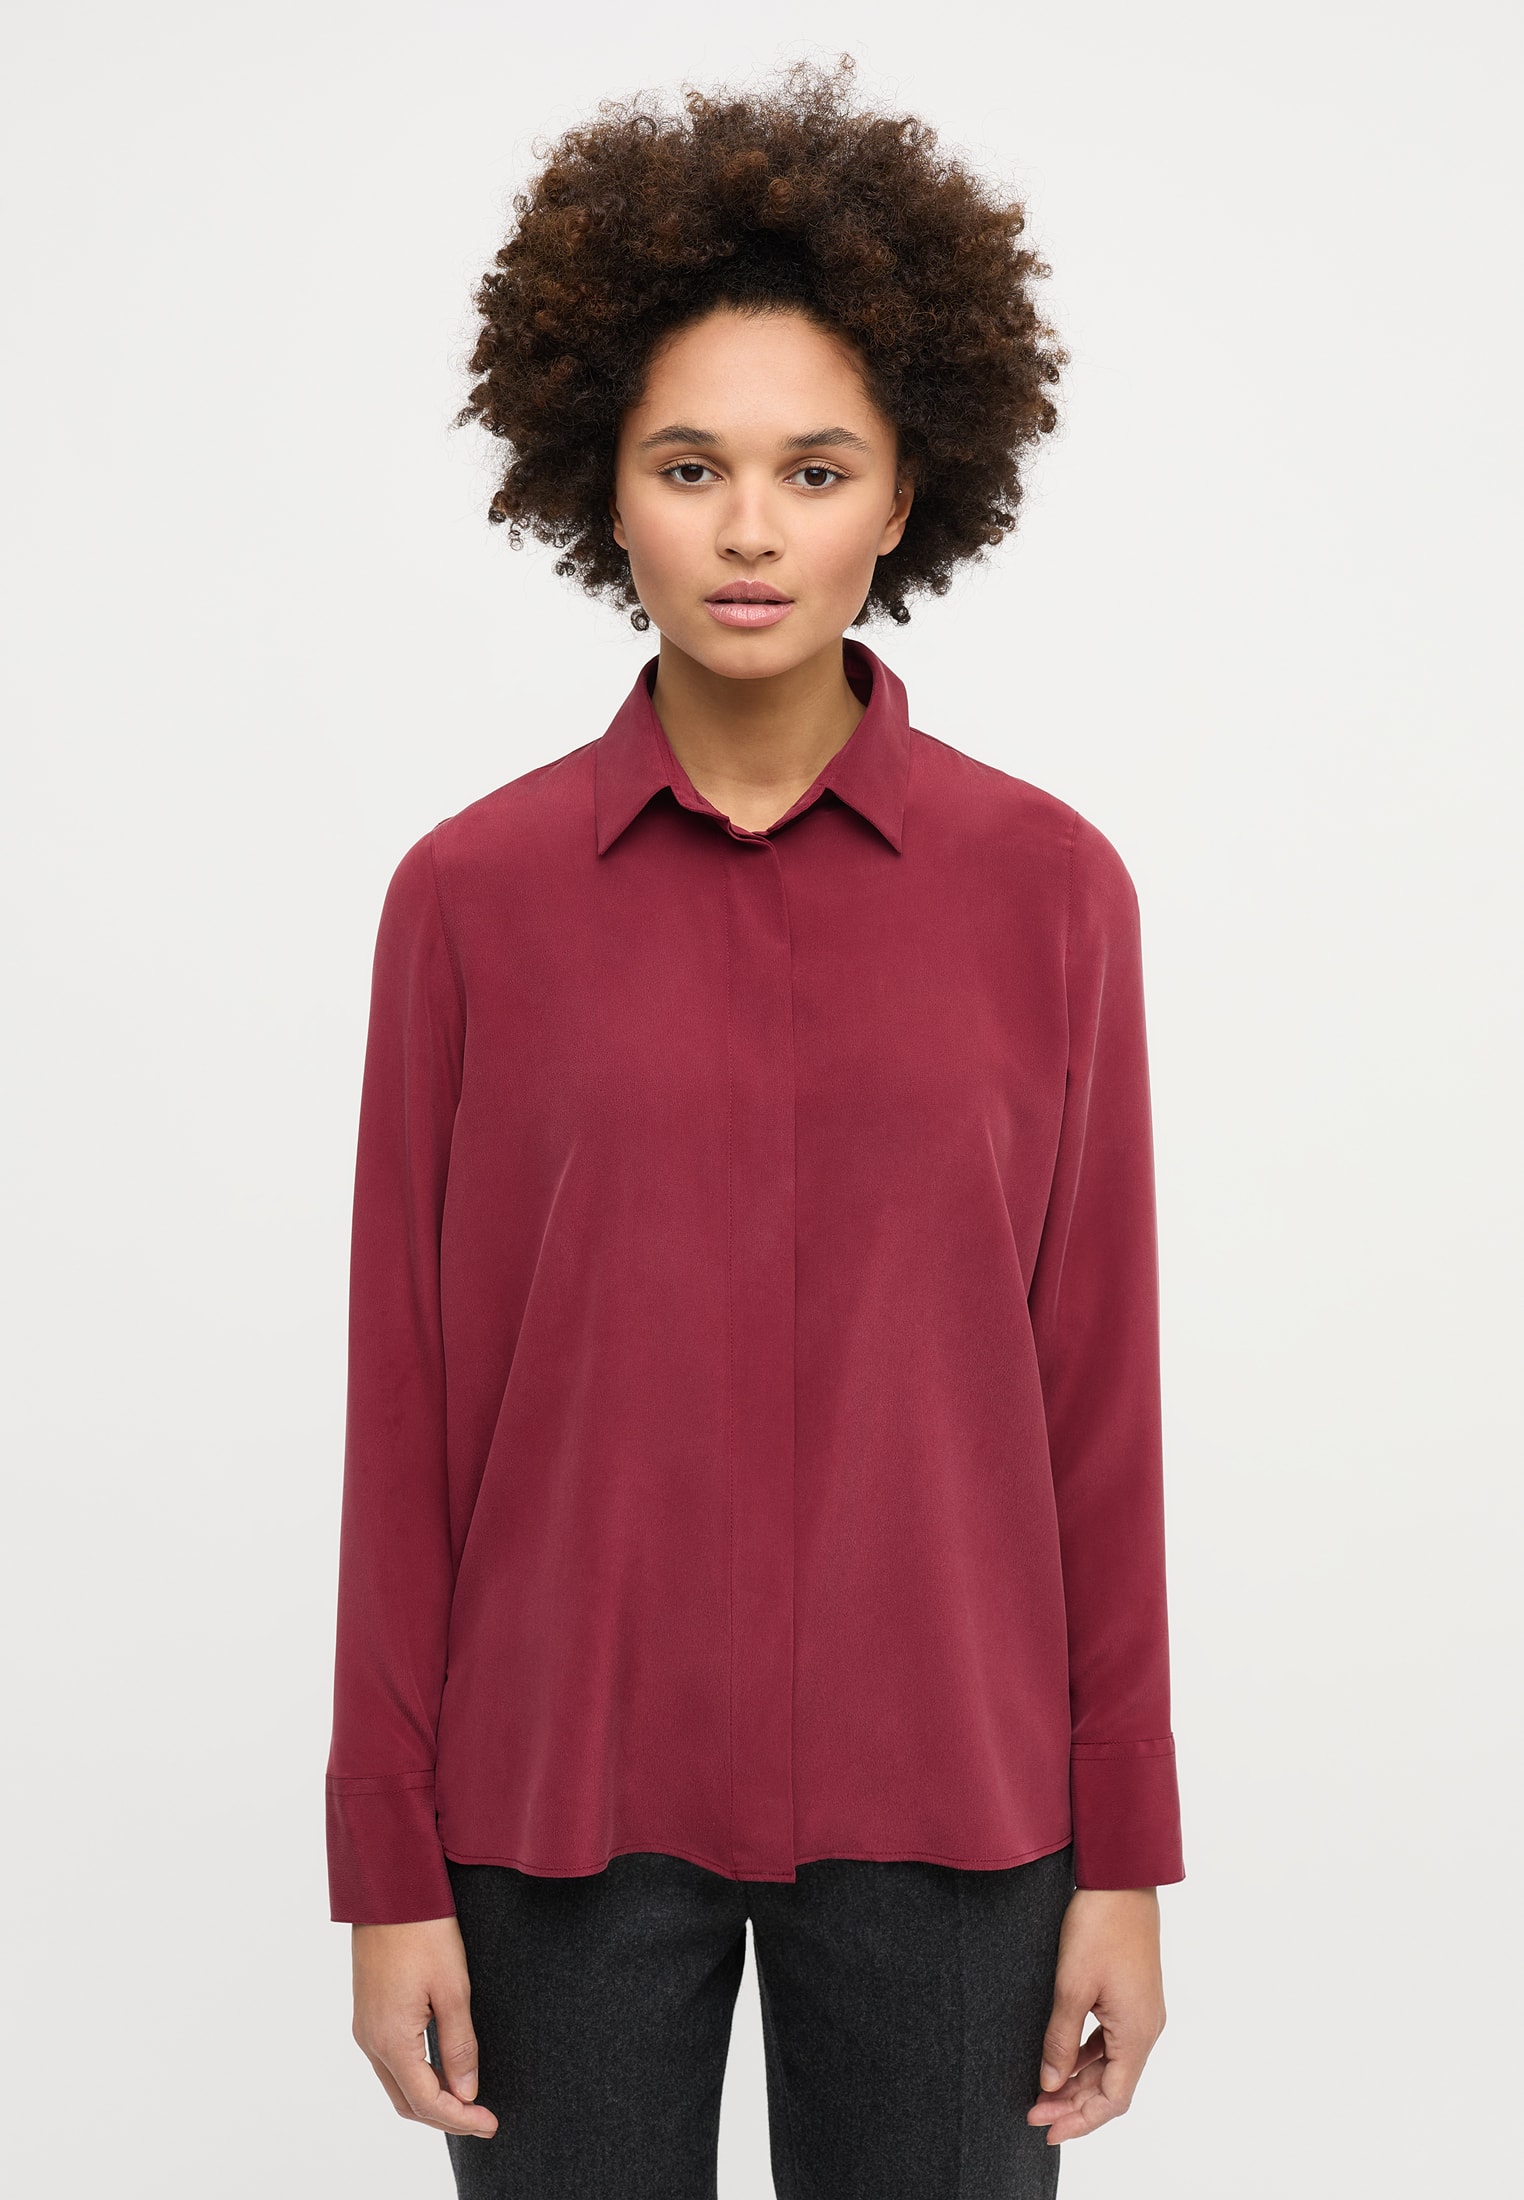 shirt-blouse in bordeaux plain